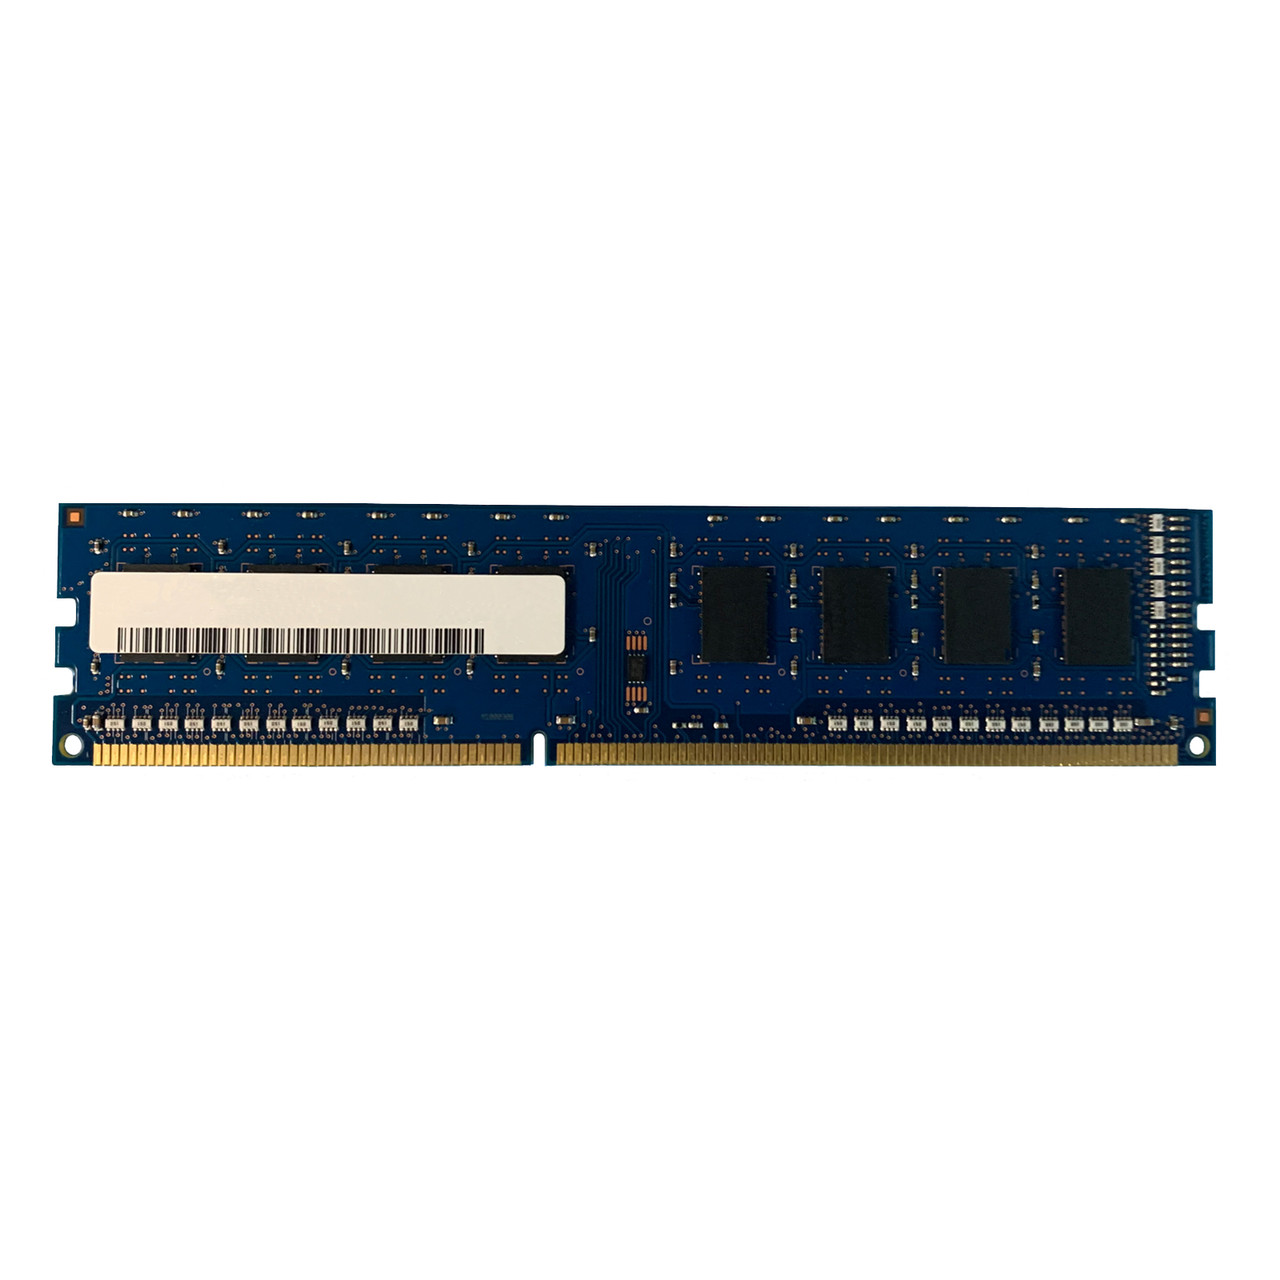 Dell F680F 1GB 1Rx8 PC3 8500U Memory Module